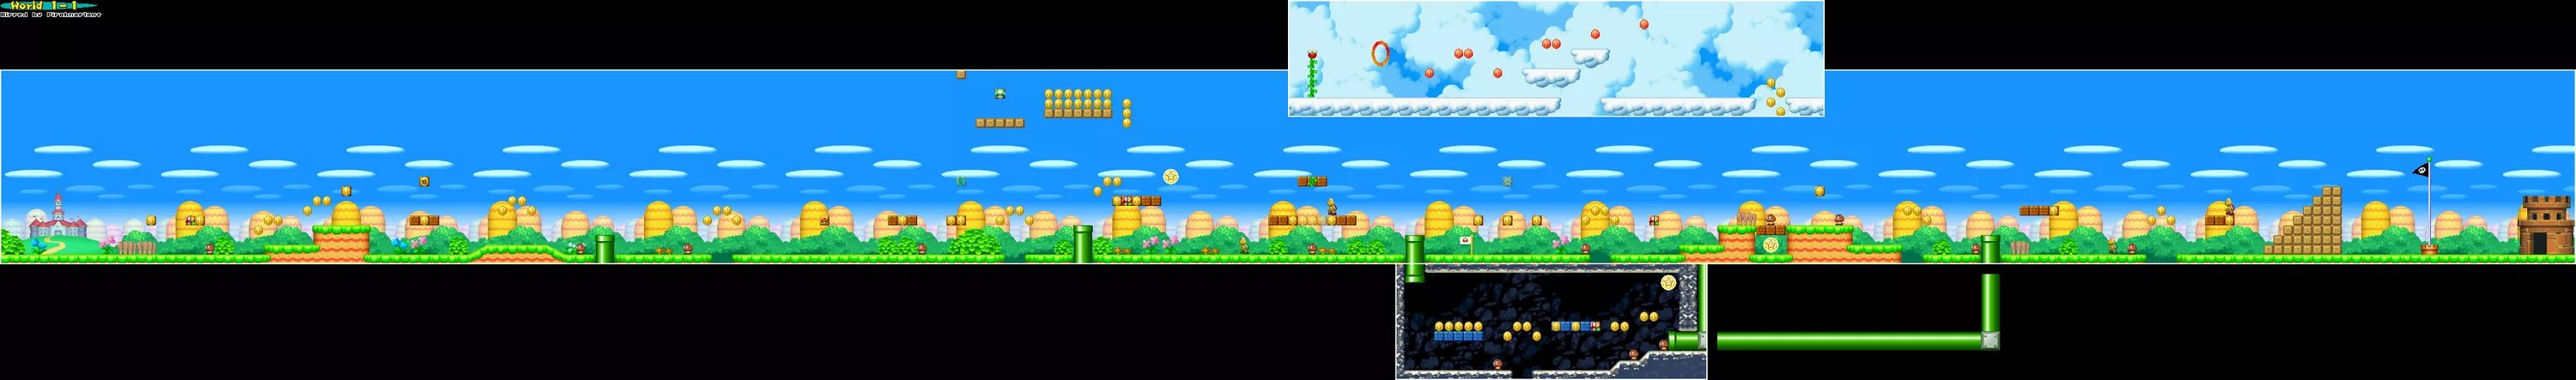 Holy world 1.16. Super Mario World World 1. Super Mario Bros 1-1 Map. Mario Level 1. New super Mario Bros Nintendo DS.